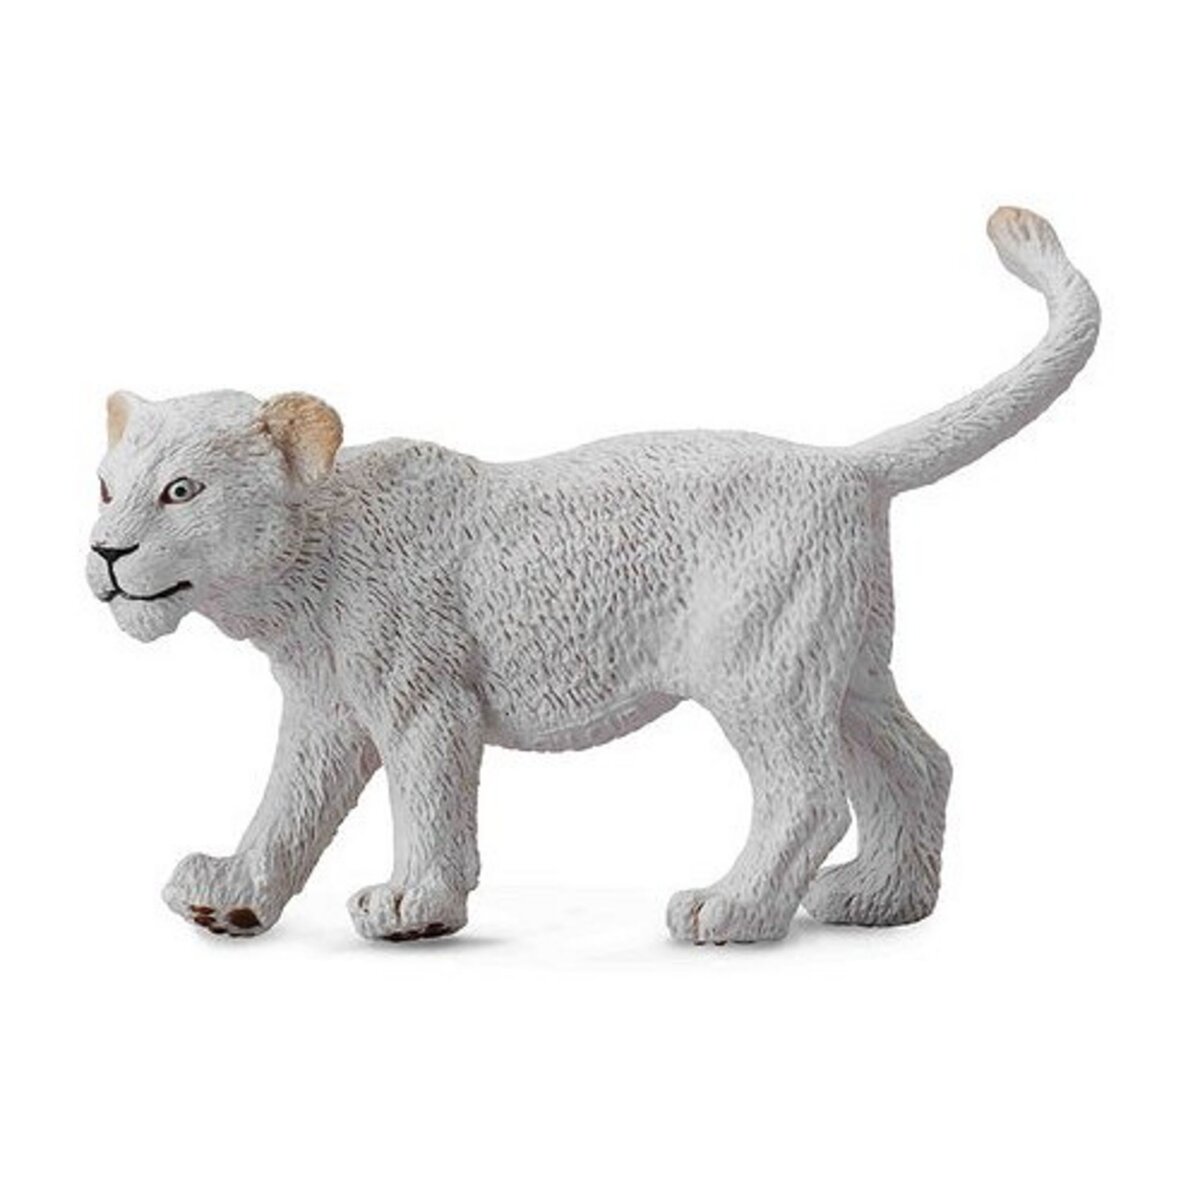 Figurines Collecta Figurine Lion blanc : Lionceau